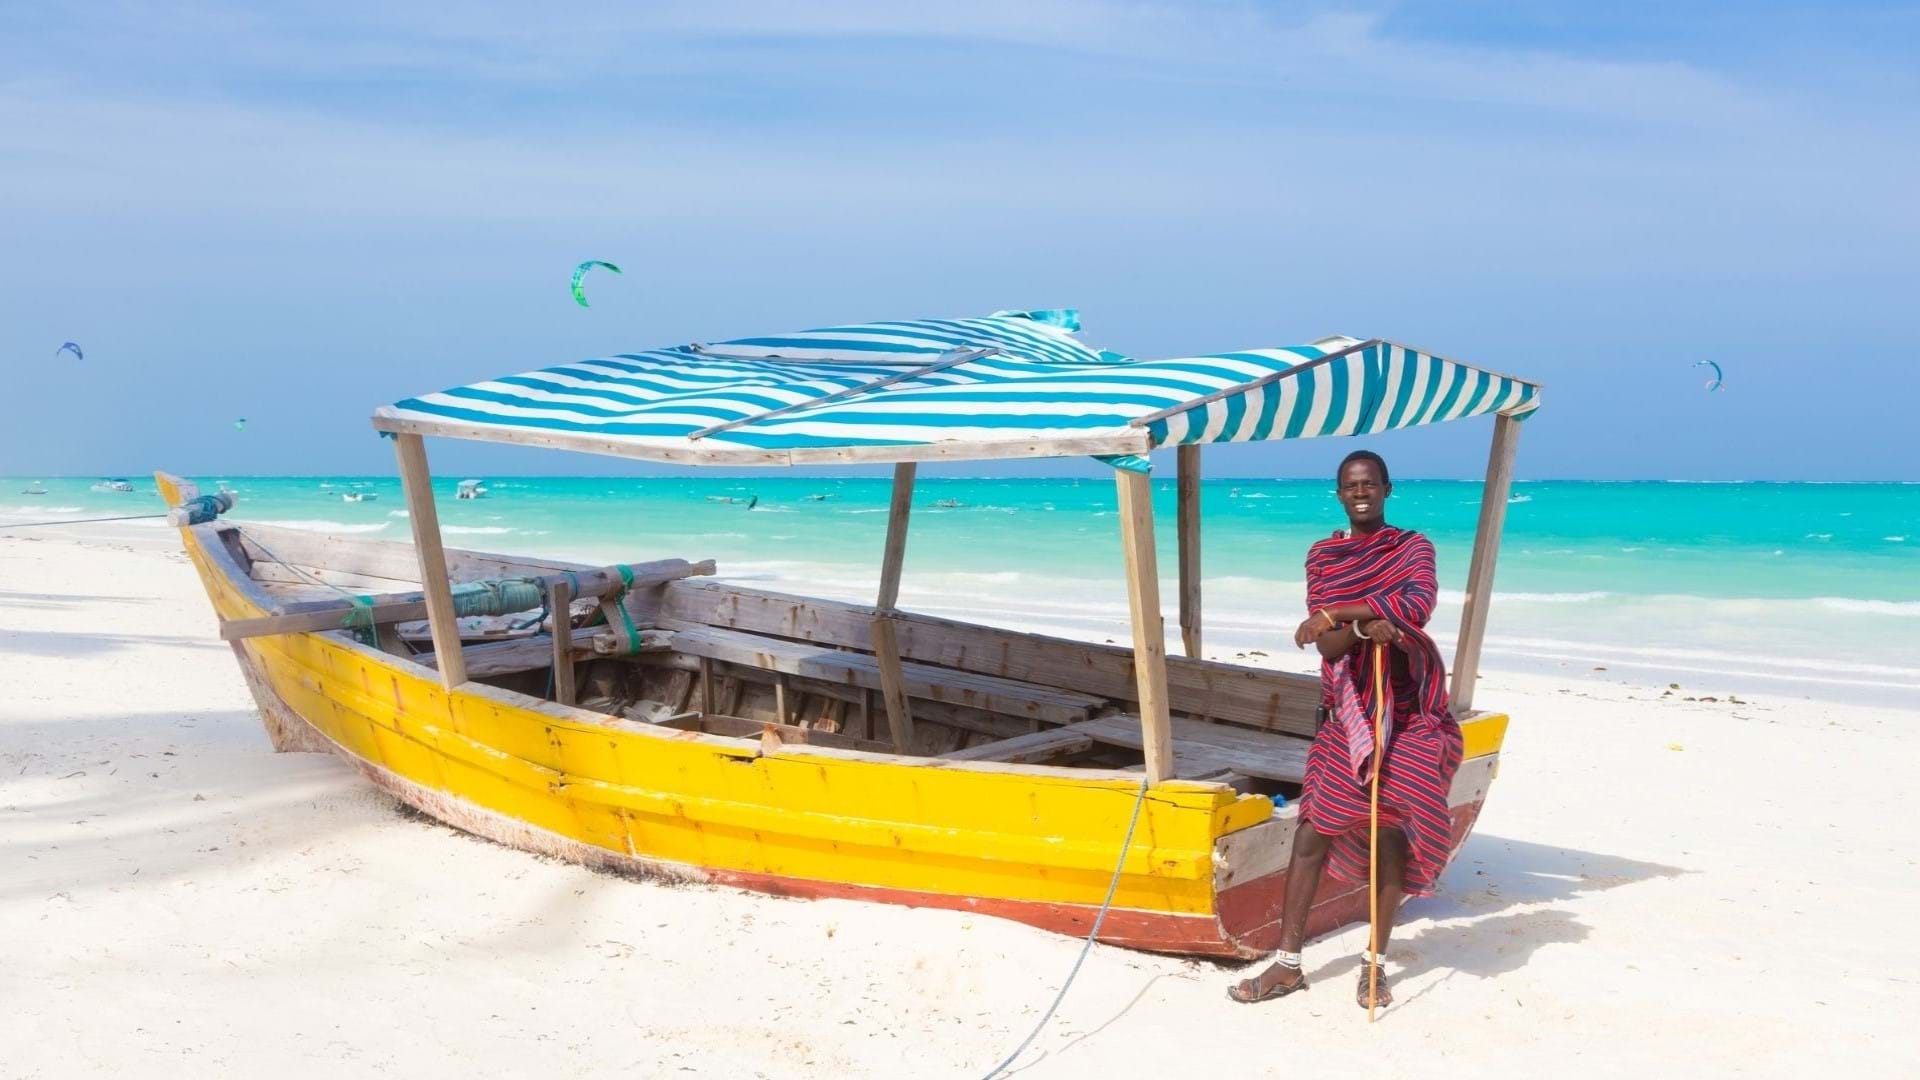 Zanzibar Putovanje - plaža i lokalni ribar  na plaži. U pozadini tirkizno more i beli pesak